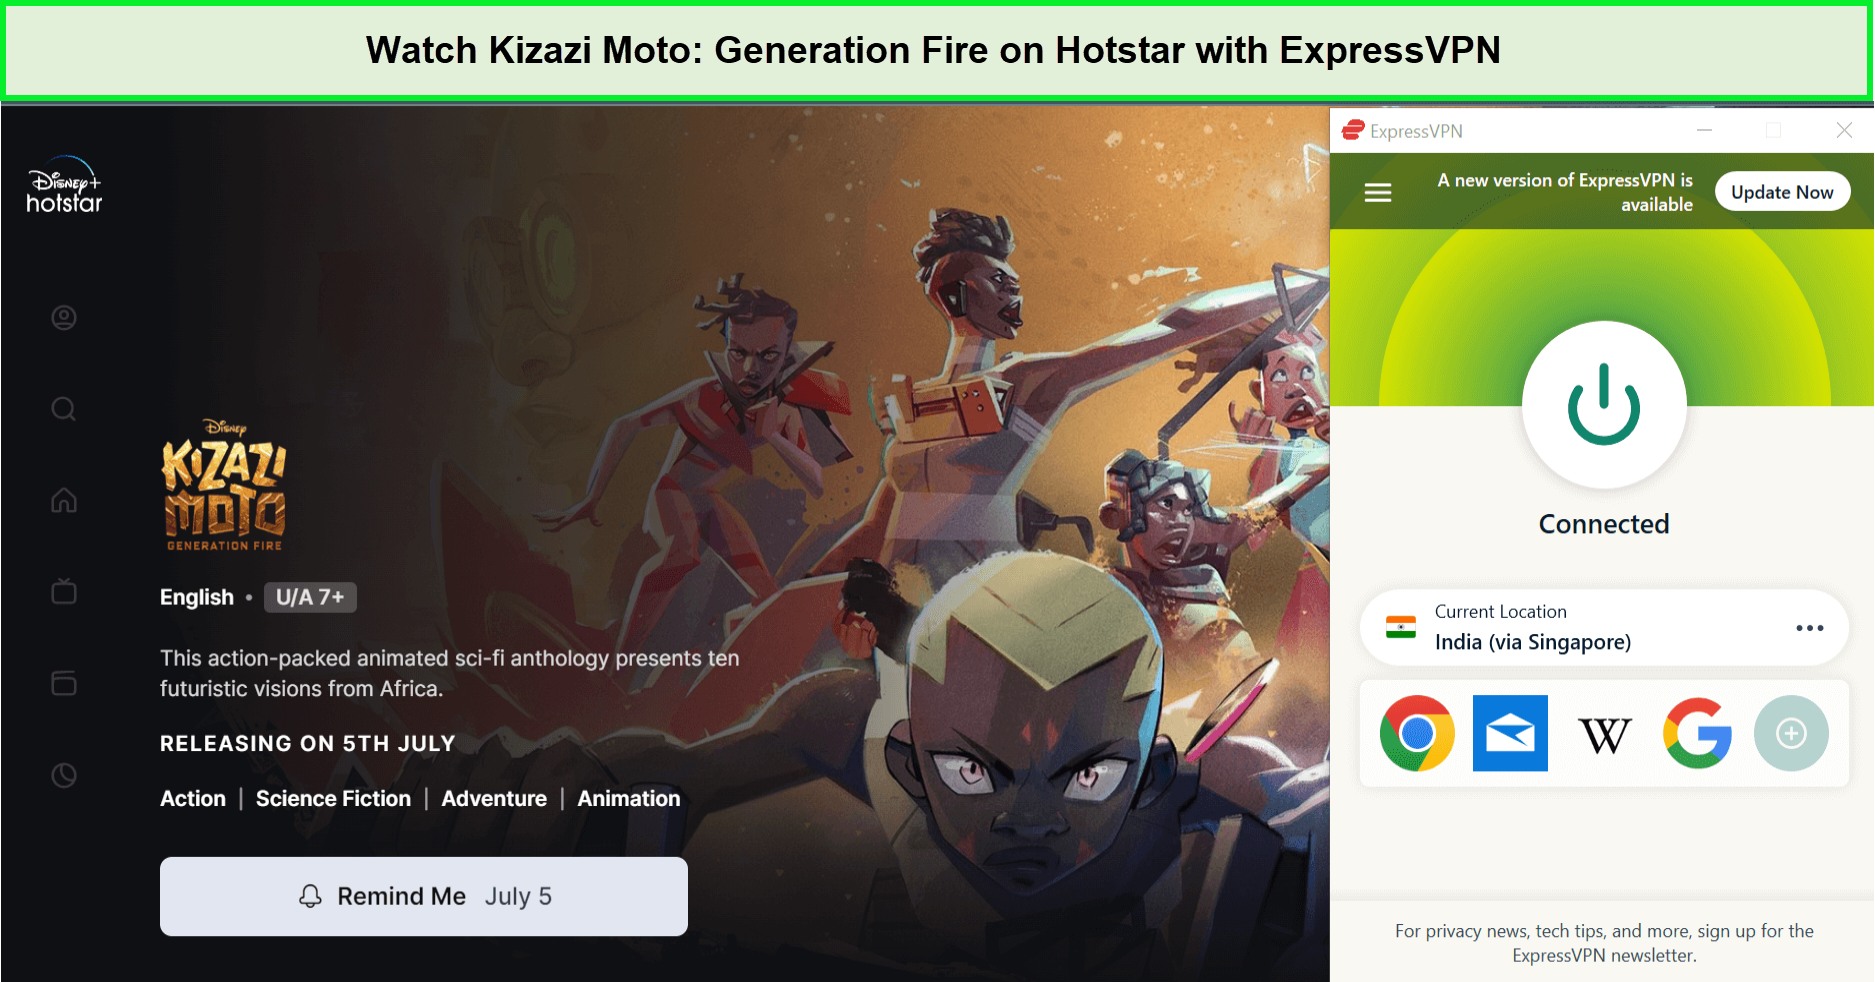 Watch-Kizazi-Moto-Generation-Fire-in-France-on-Hotstar-with-ExpressVPN